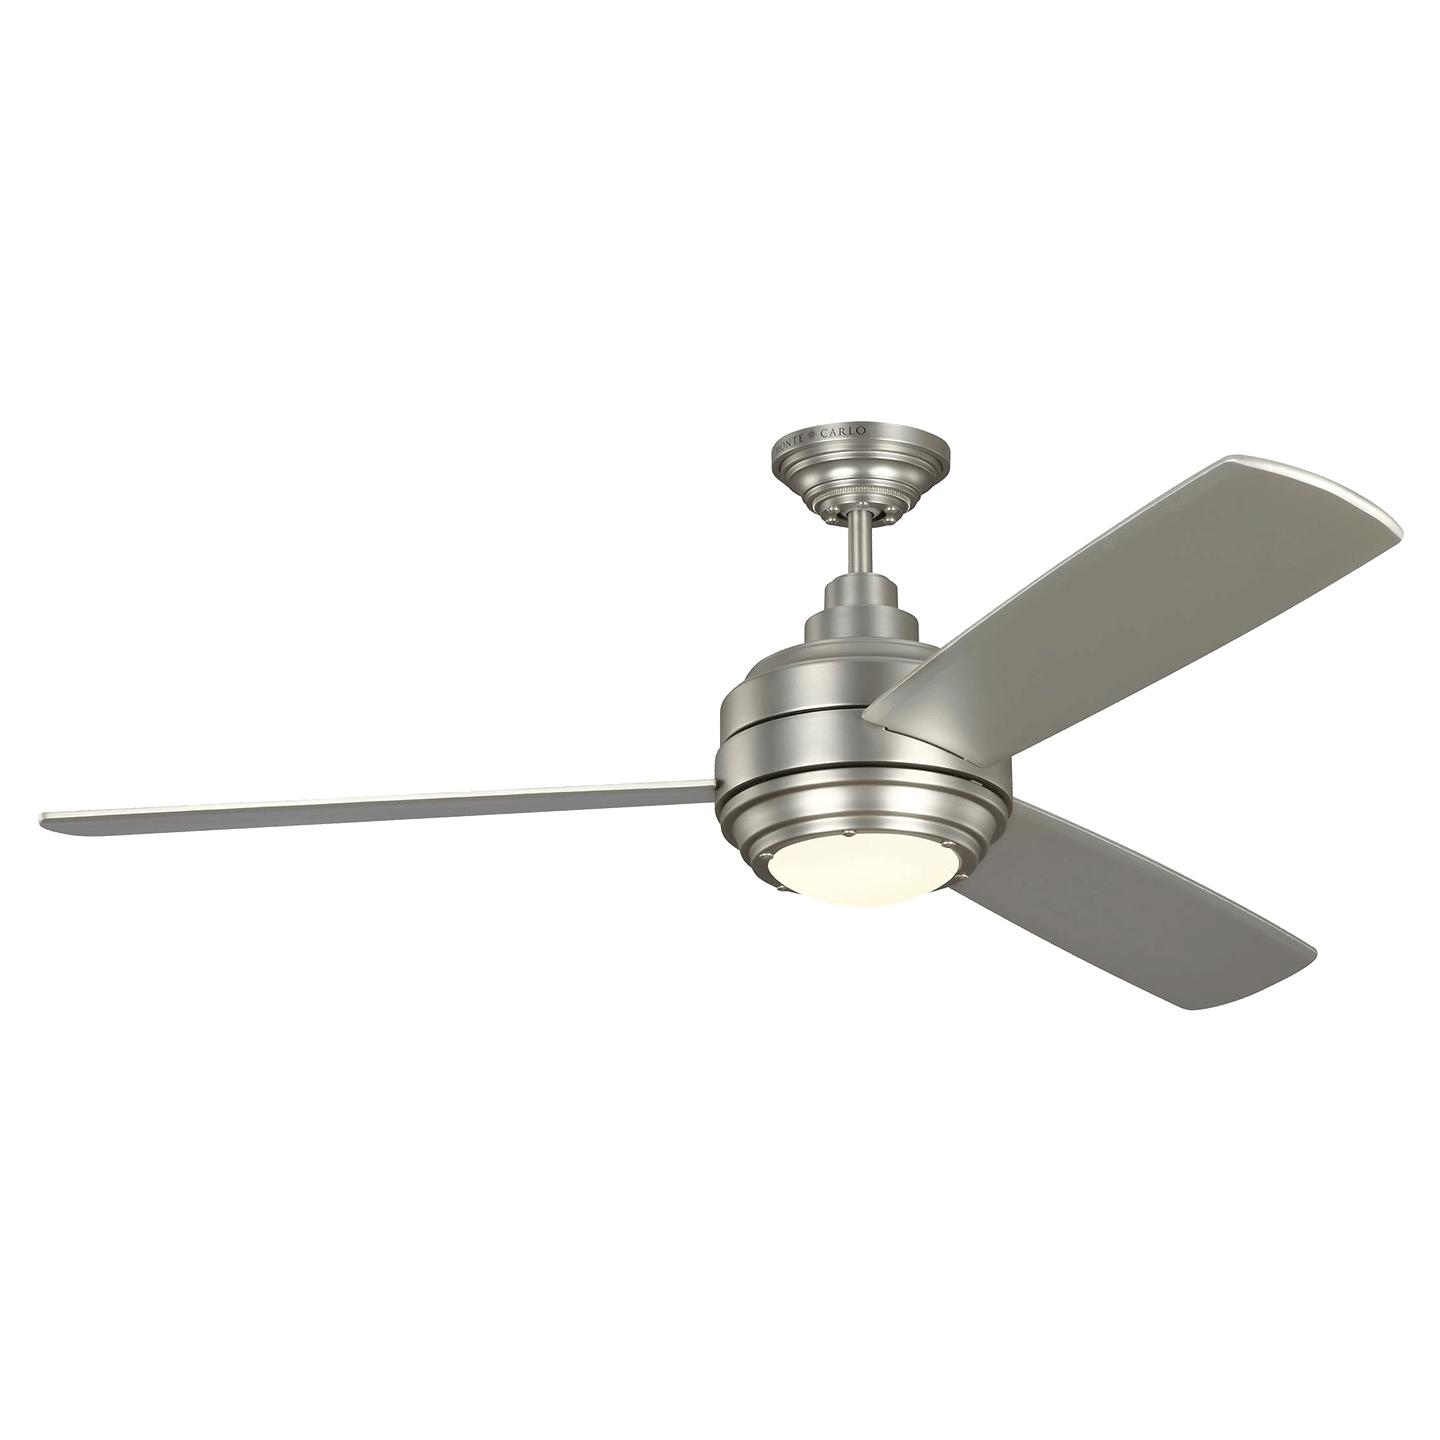 Купить Потолочный вентилятор Aerotour 56" Ceiling Fan в интернет-магазине roooms.ru